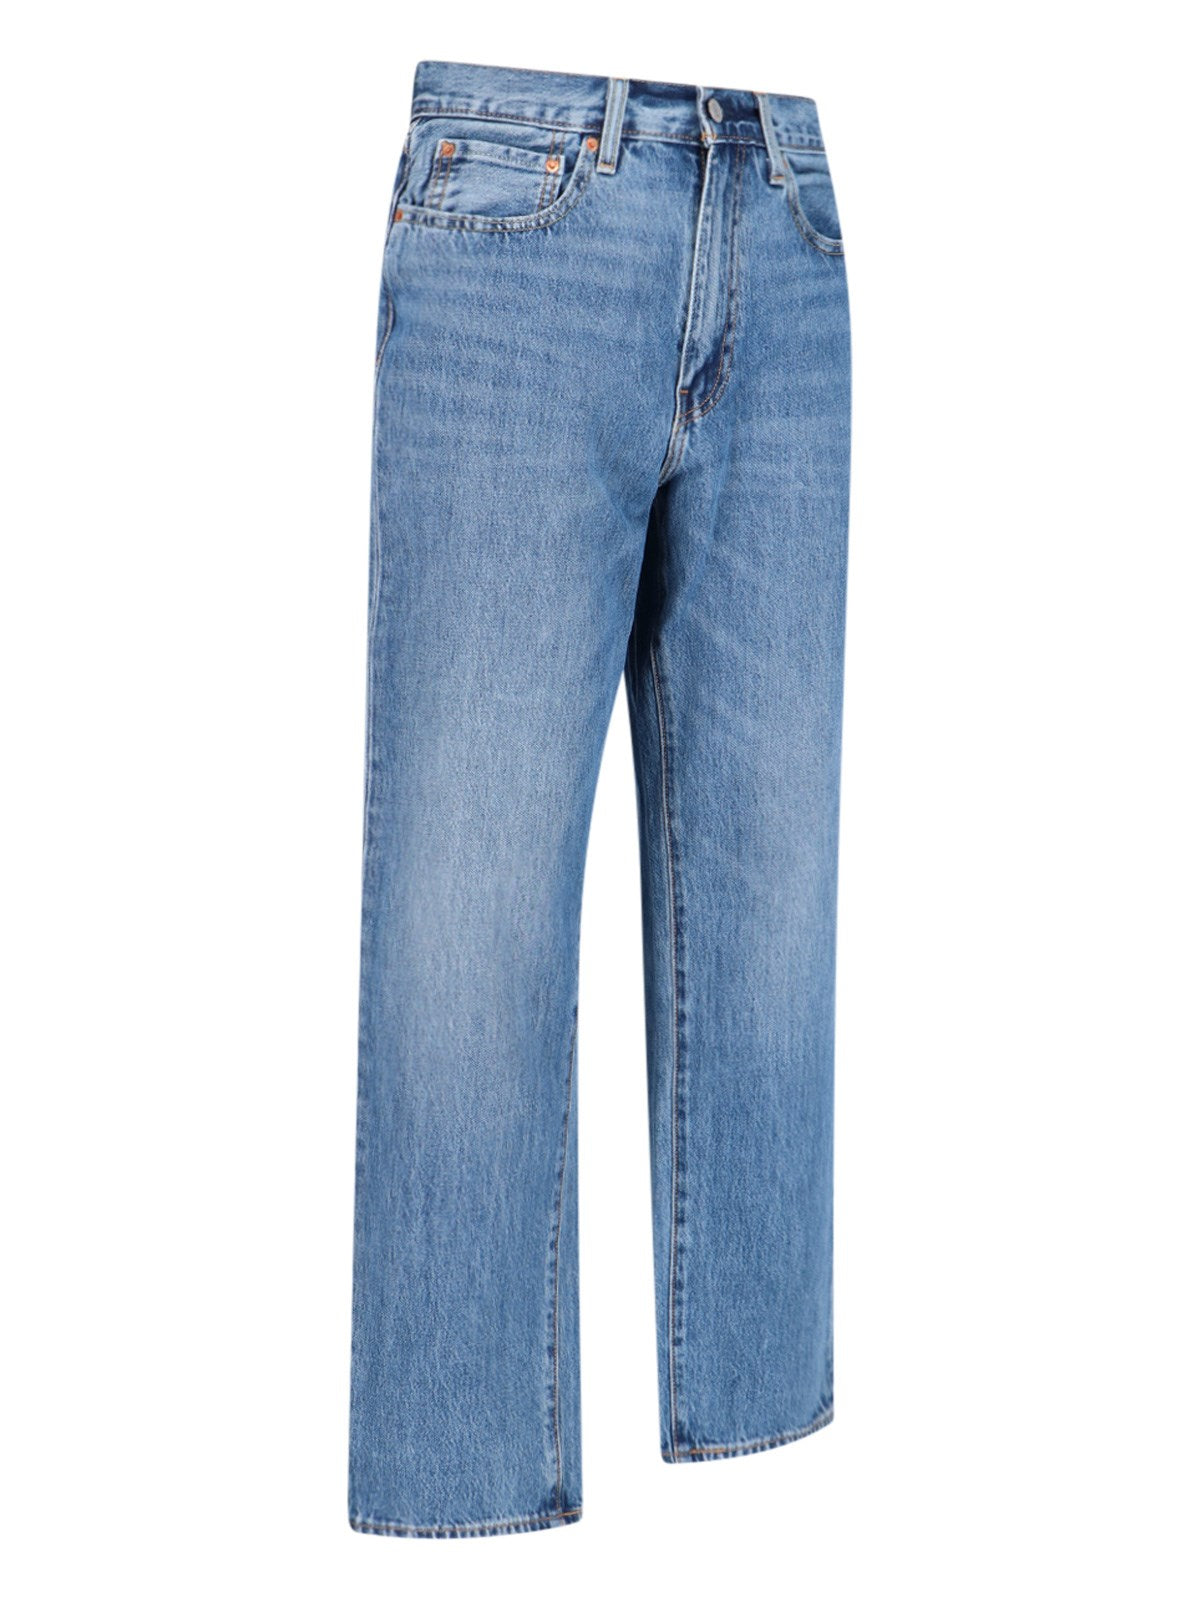 levi's strauss jeans " 501® "-Jeans dritti-Levi's strauss-jeans "501® " levi's strauss, in cotone blu, passanti cintura, chiusura zip e bottone, design cinque tasche, patch marrone logo retro, gamba dritta. codice prodotto 29037 0050merry and bright composizione: 100% cotone dimensioni/vestibilità: regolare made in: bangladesh - scala taglie denim - Dresso